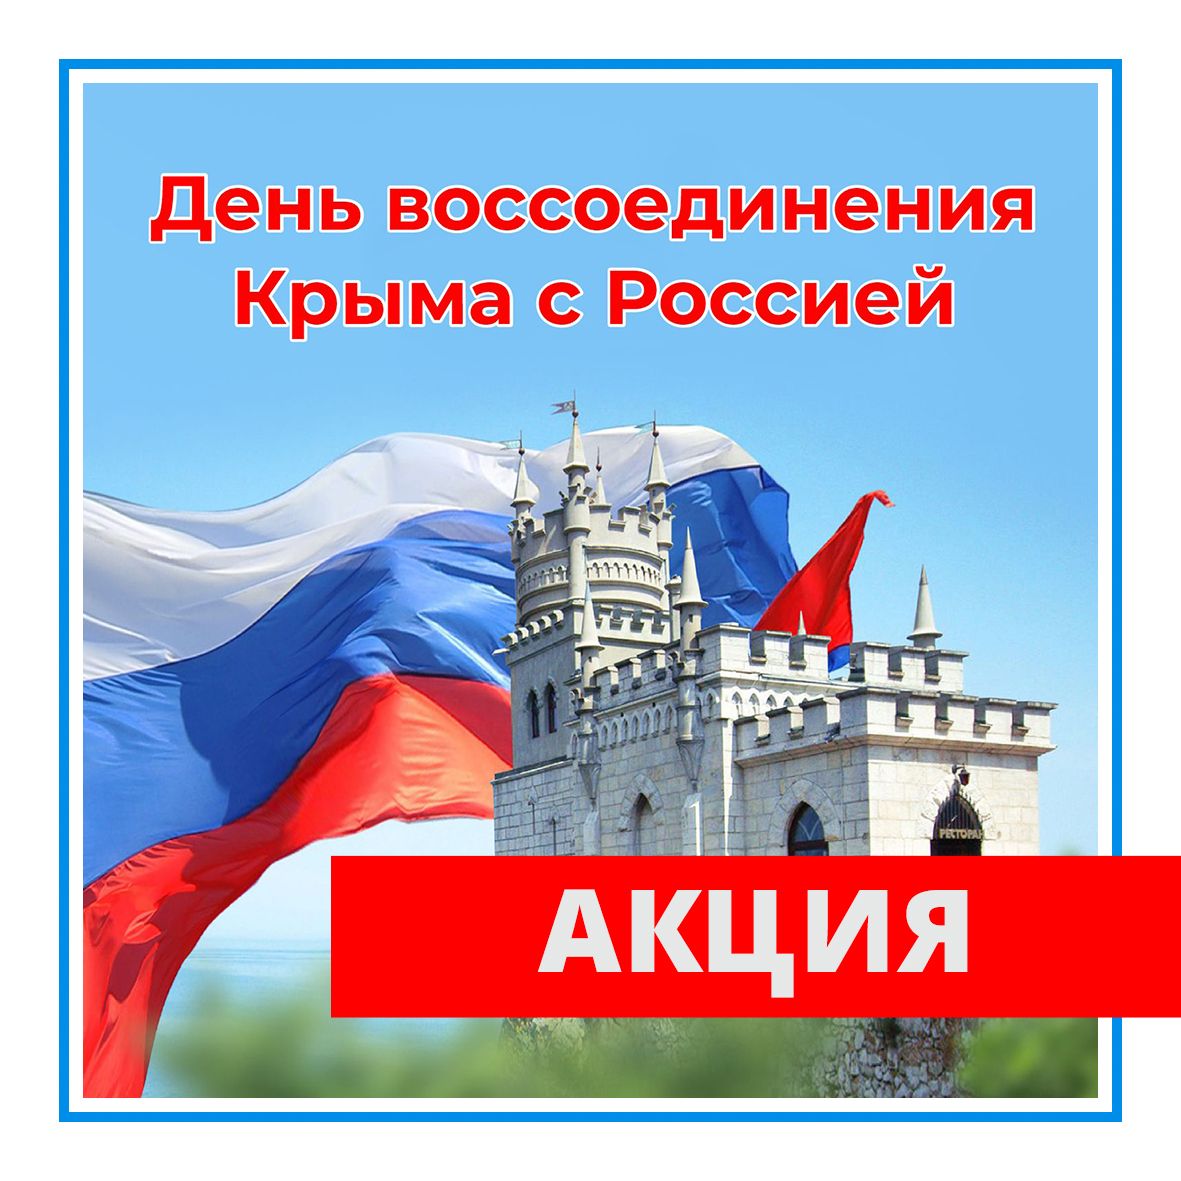 День воссоединения Крыма